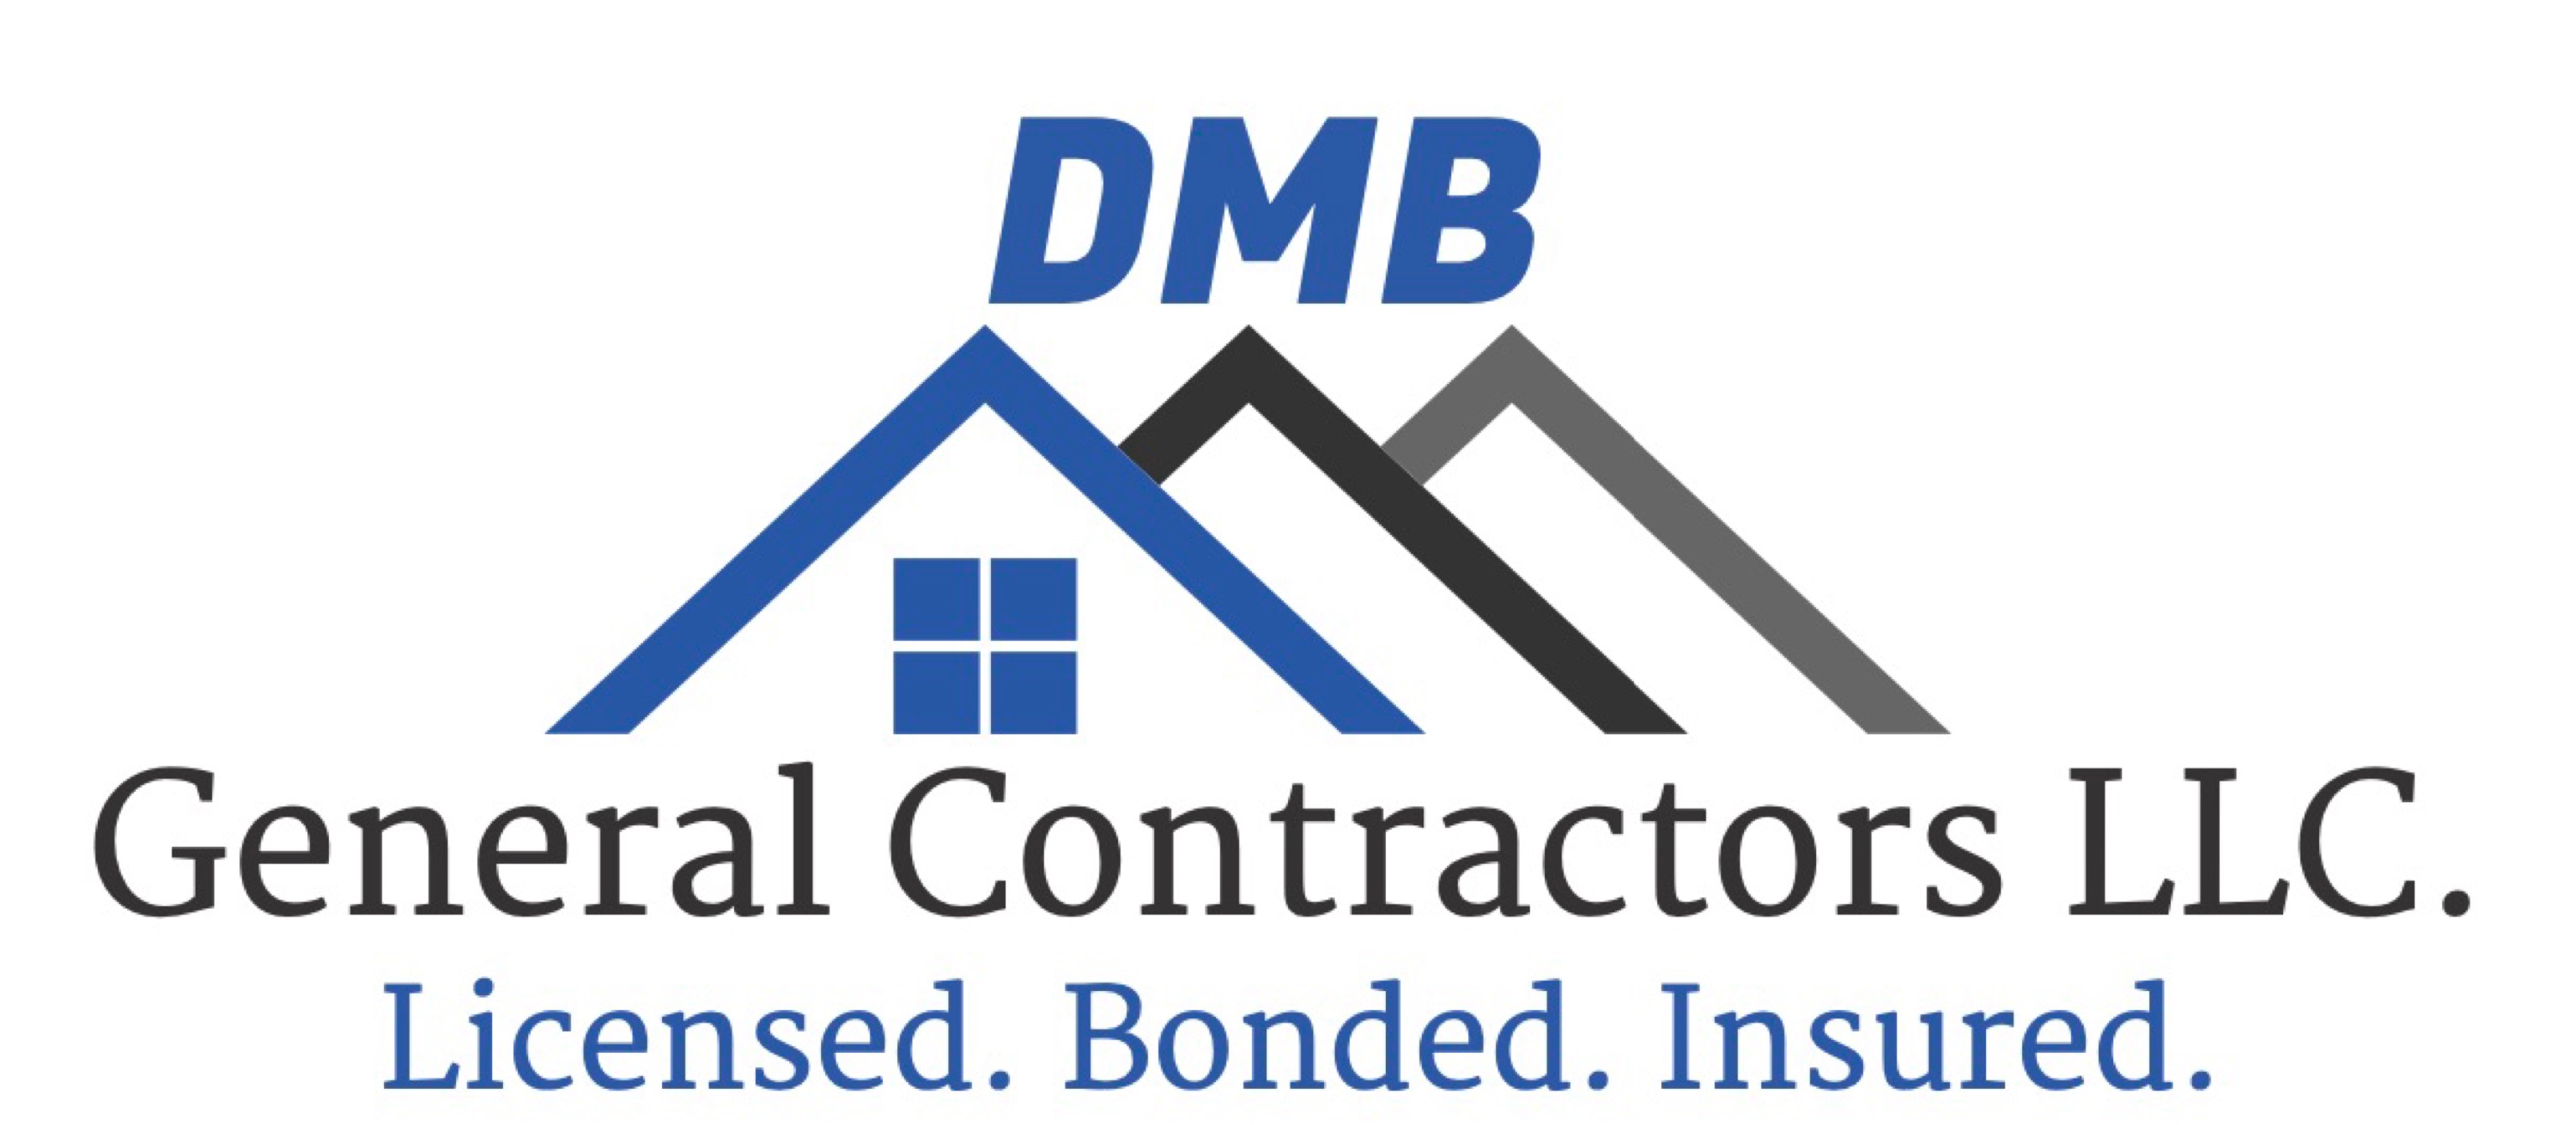 DMB General Contractors, LLC Logo